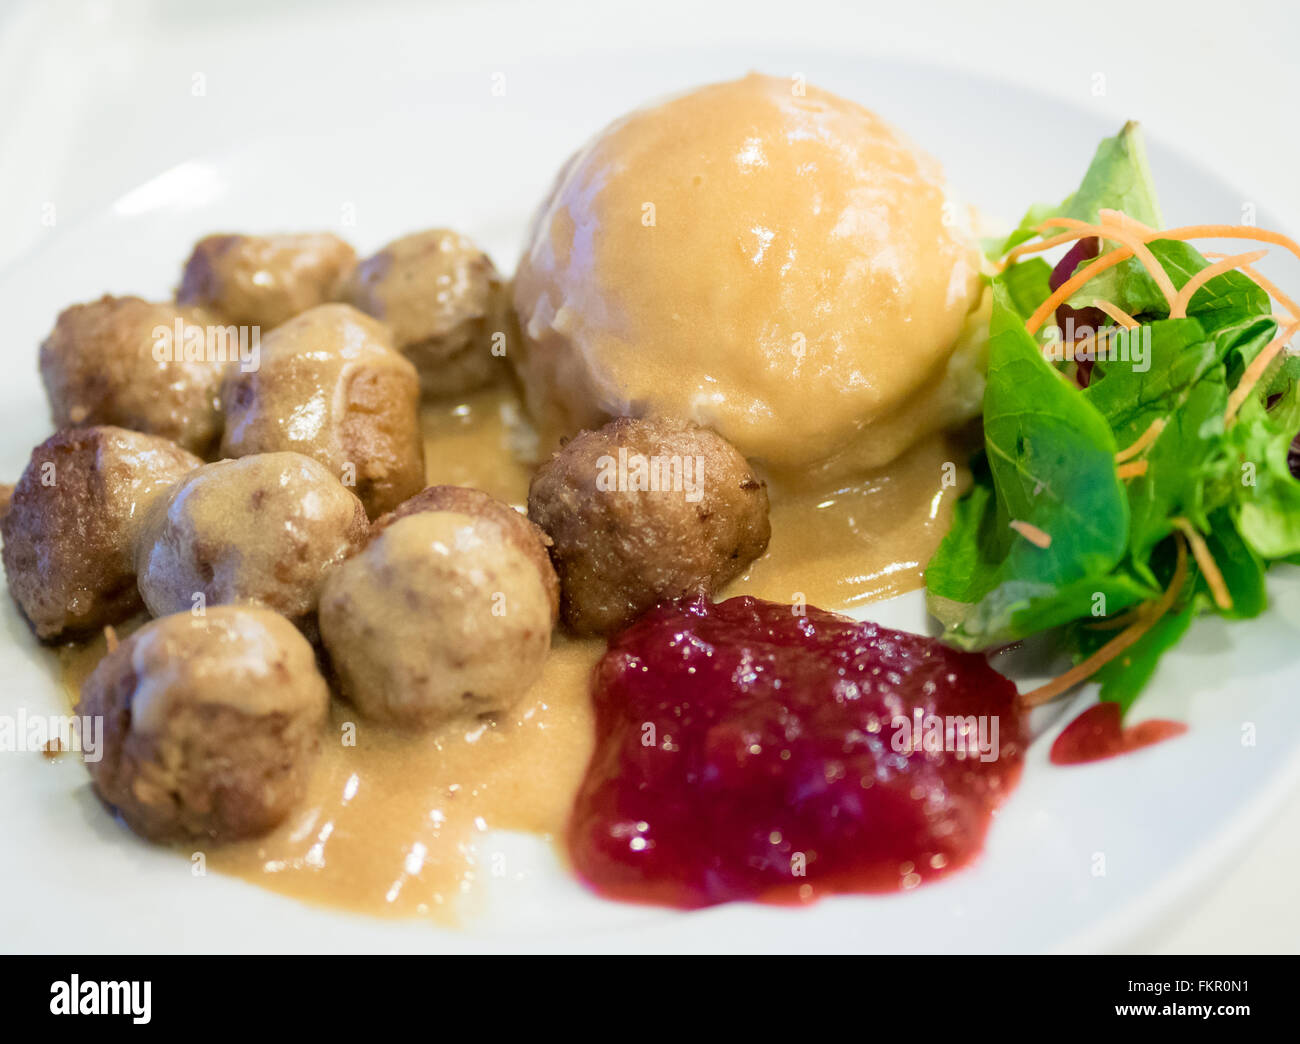 Une assiette de boulettes IKEA, purée de pommes de terre, sauce à la crème, salade verte et sauce aux airelles. Banque D'Images